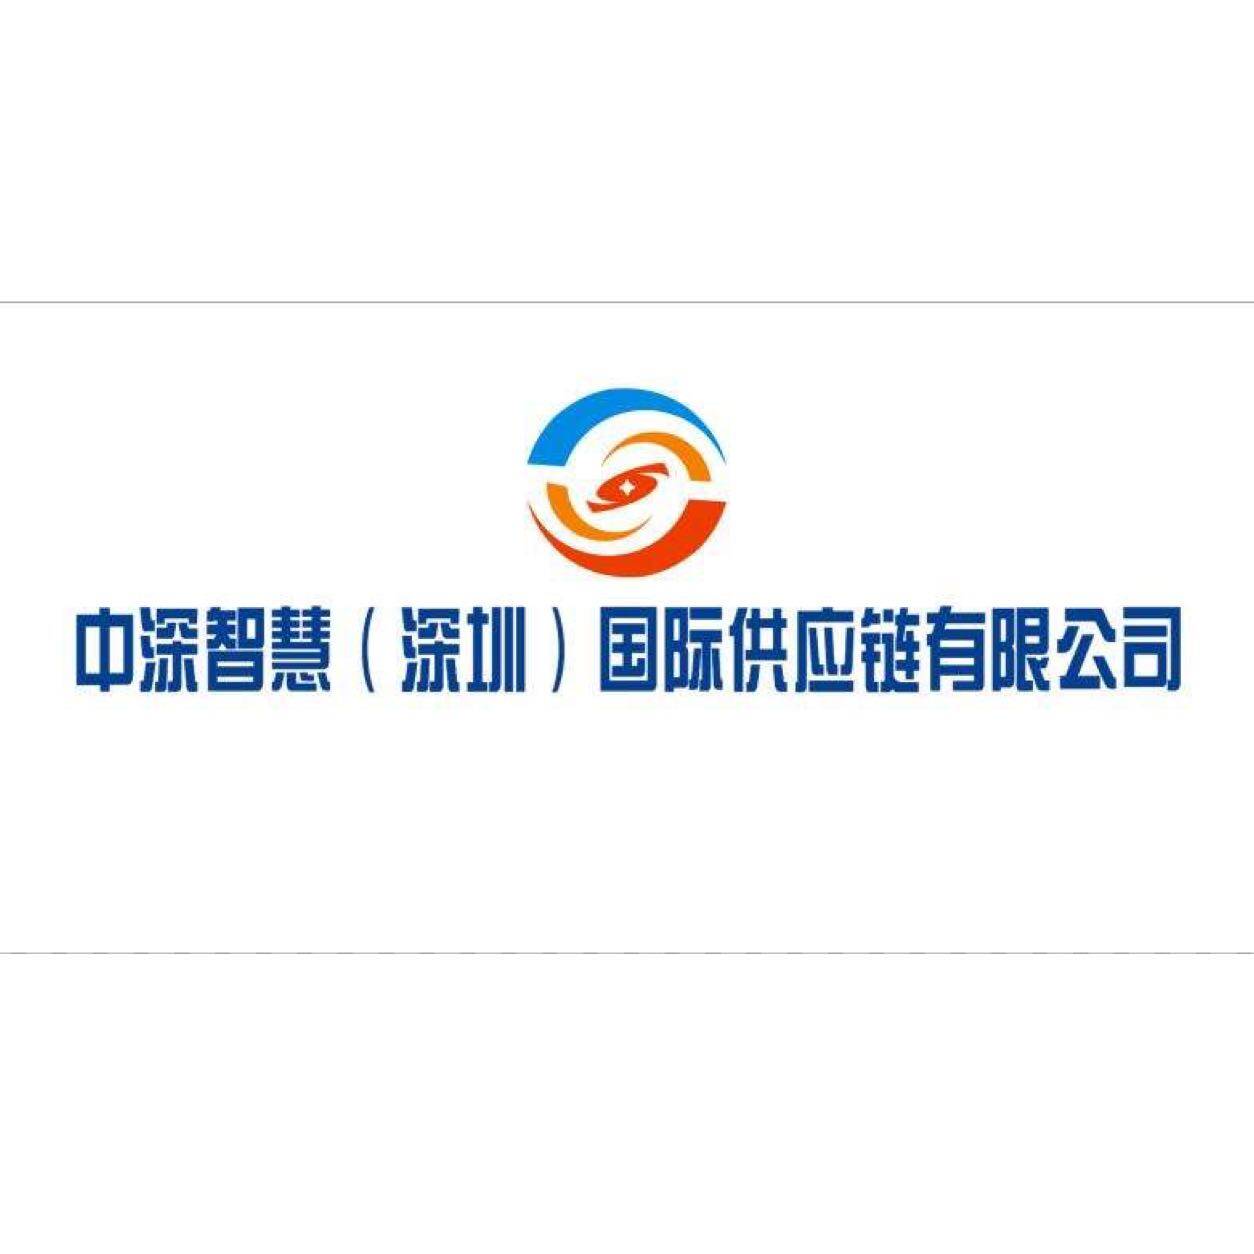 中深智慧（深圳）国际供应链有限公司东莞分公司logo